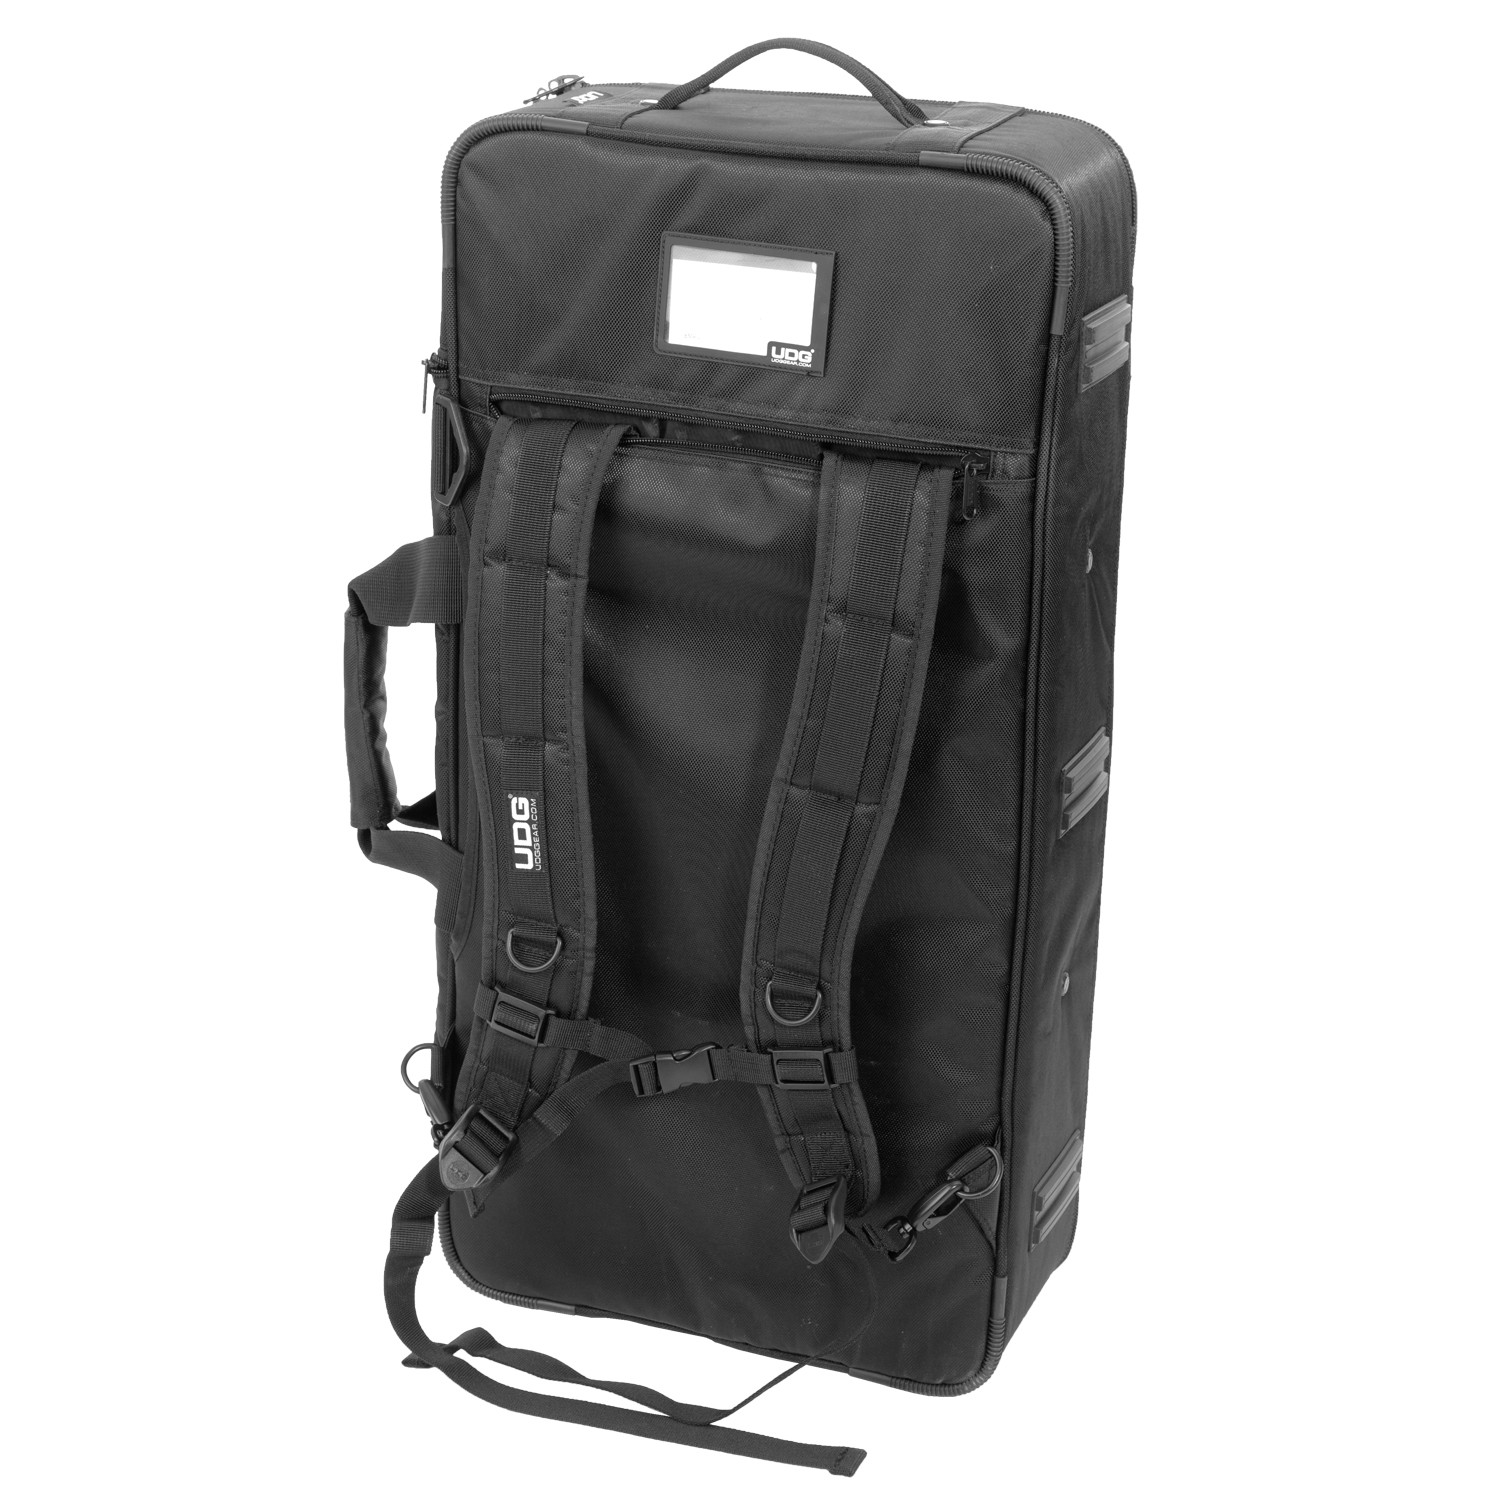 UDG Ultimate Midi Controller Backpack Large Black/Orange Inside MK2 по цене 22 210 ₽